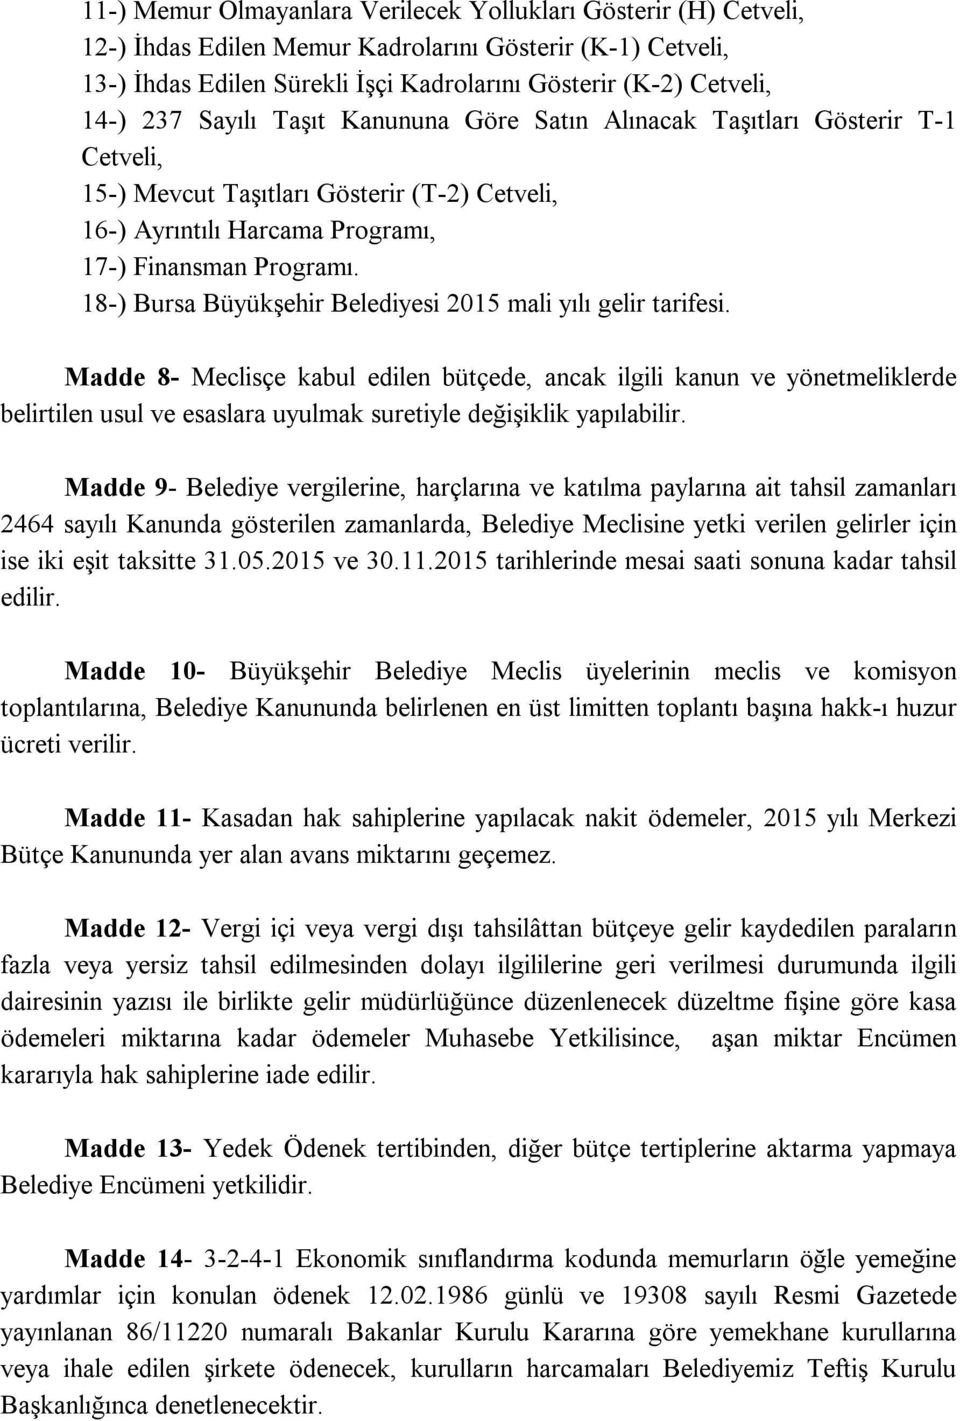 18-) Bursa Büyükşehir Belediyesi 2015 mali yılı gelir tarifesi.